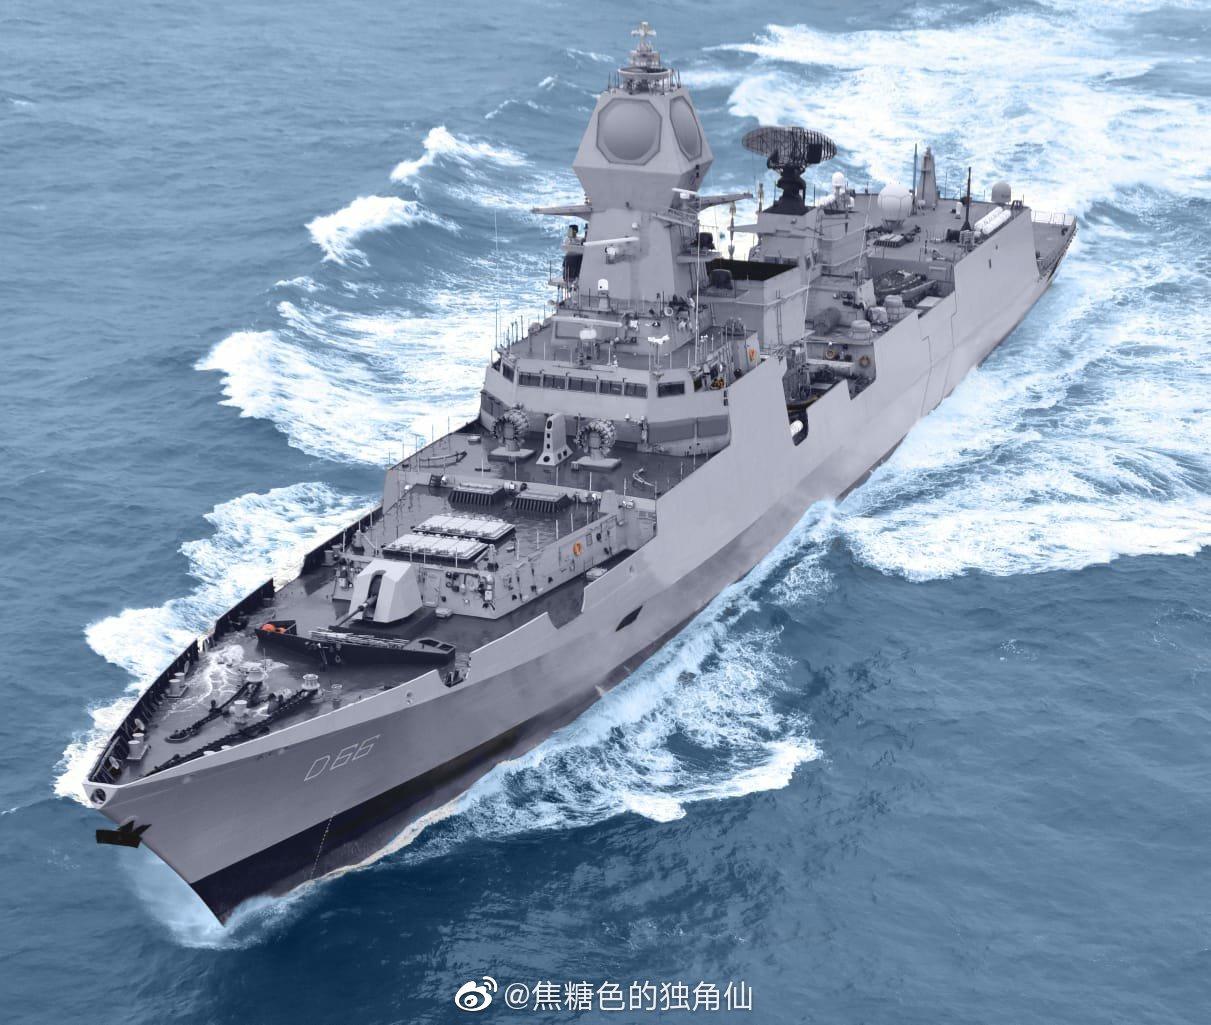 刚刚服役的印度海军最新型驱逐舰,"性能比肩中国055"?